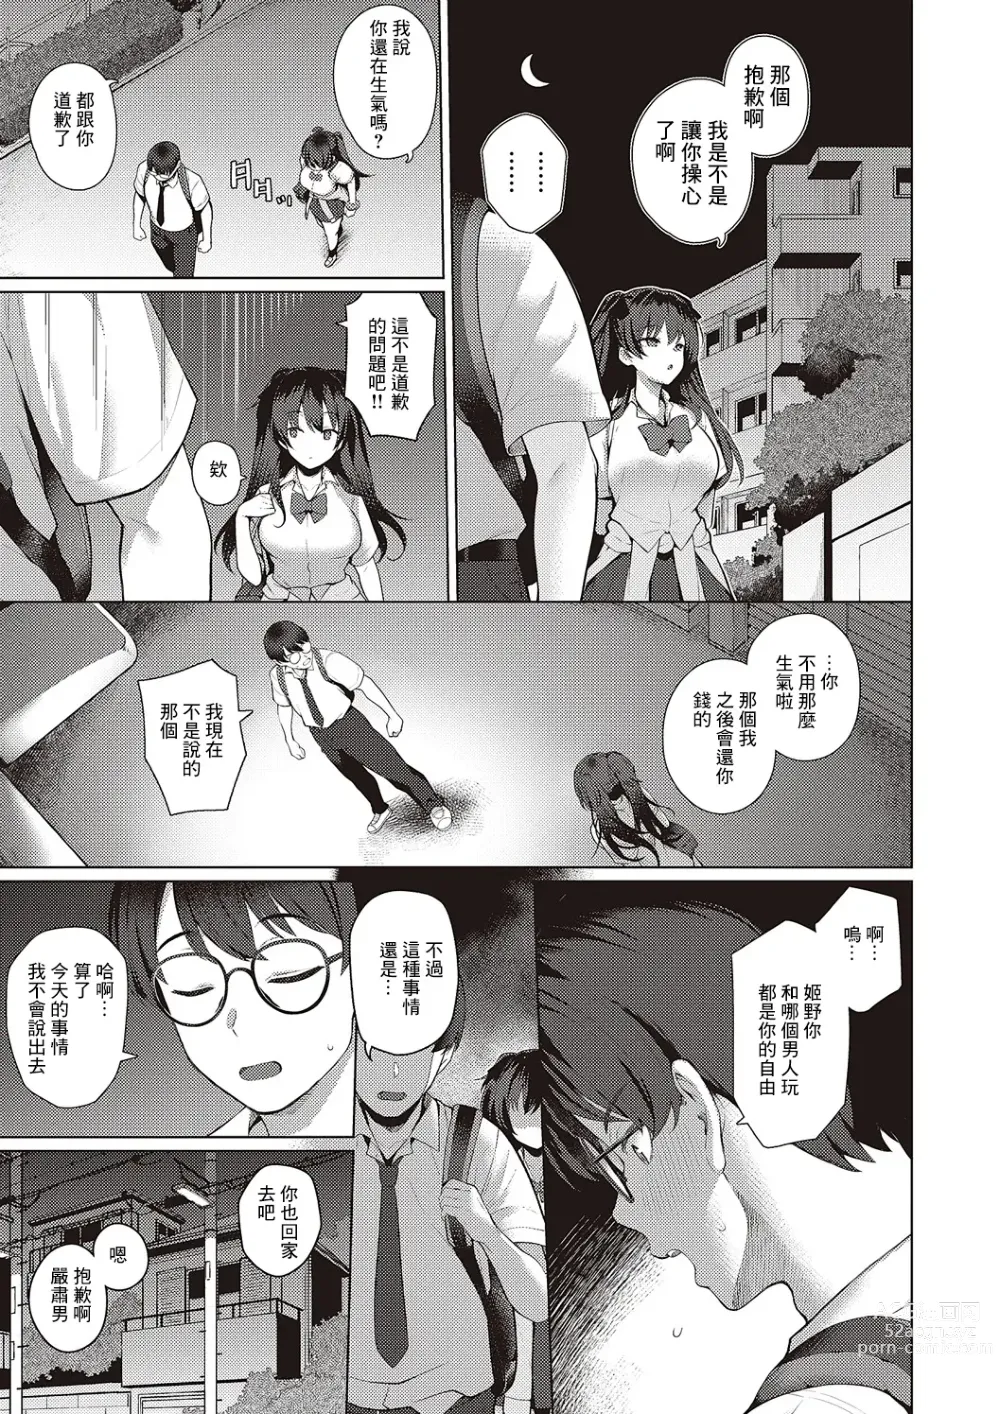 Page 13 of manga Majime to Fumajime